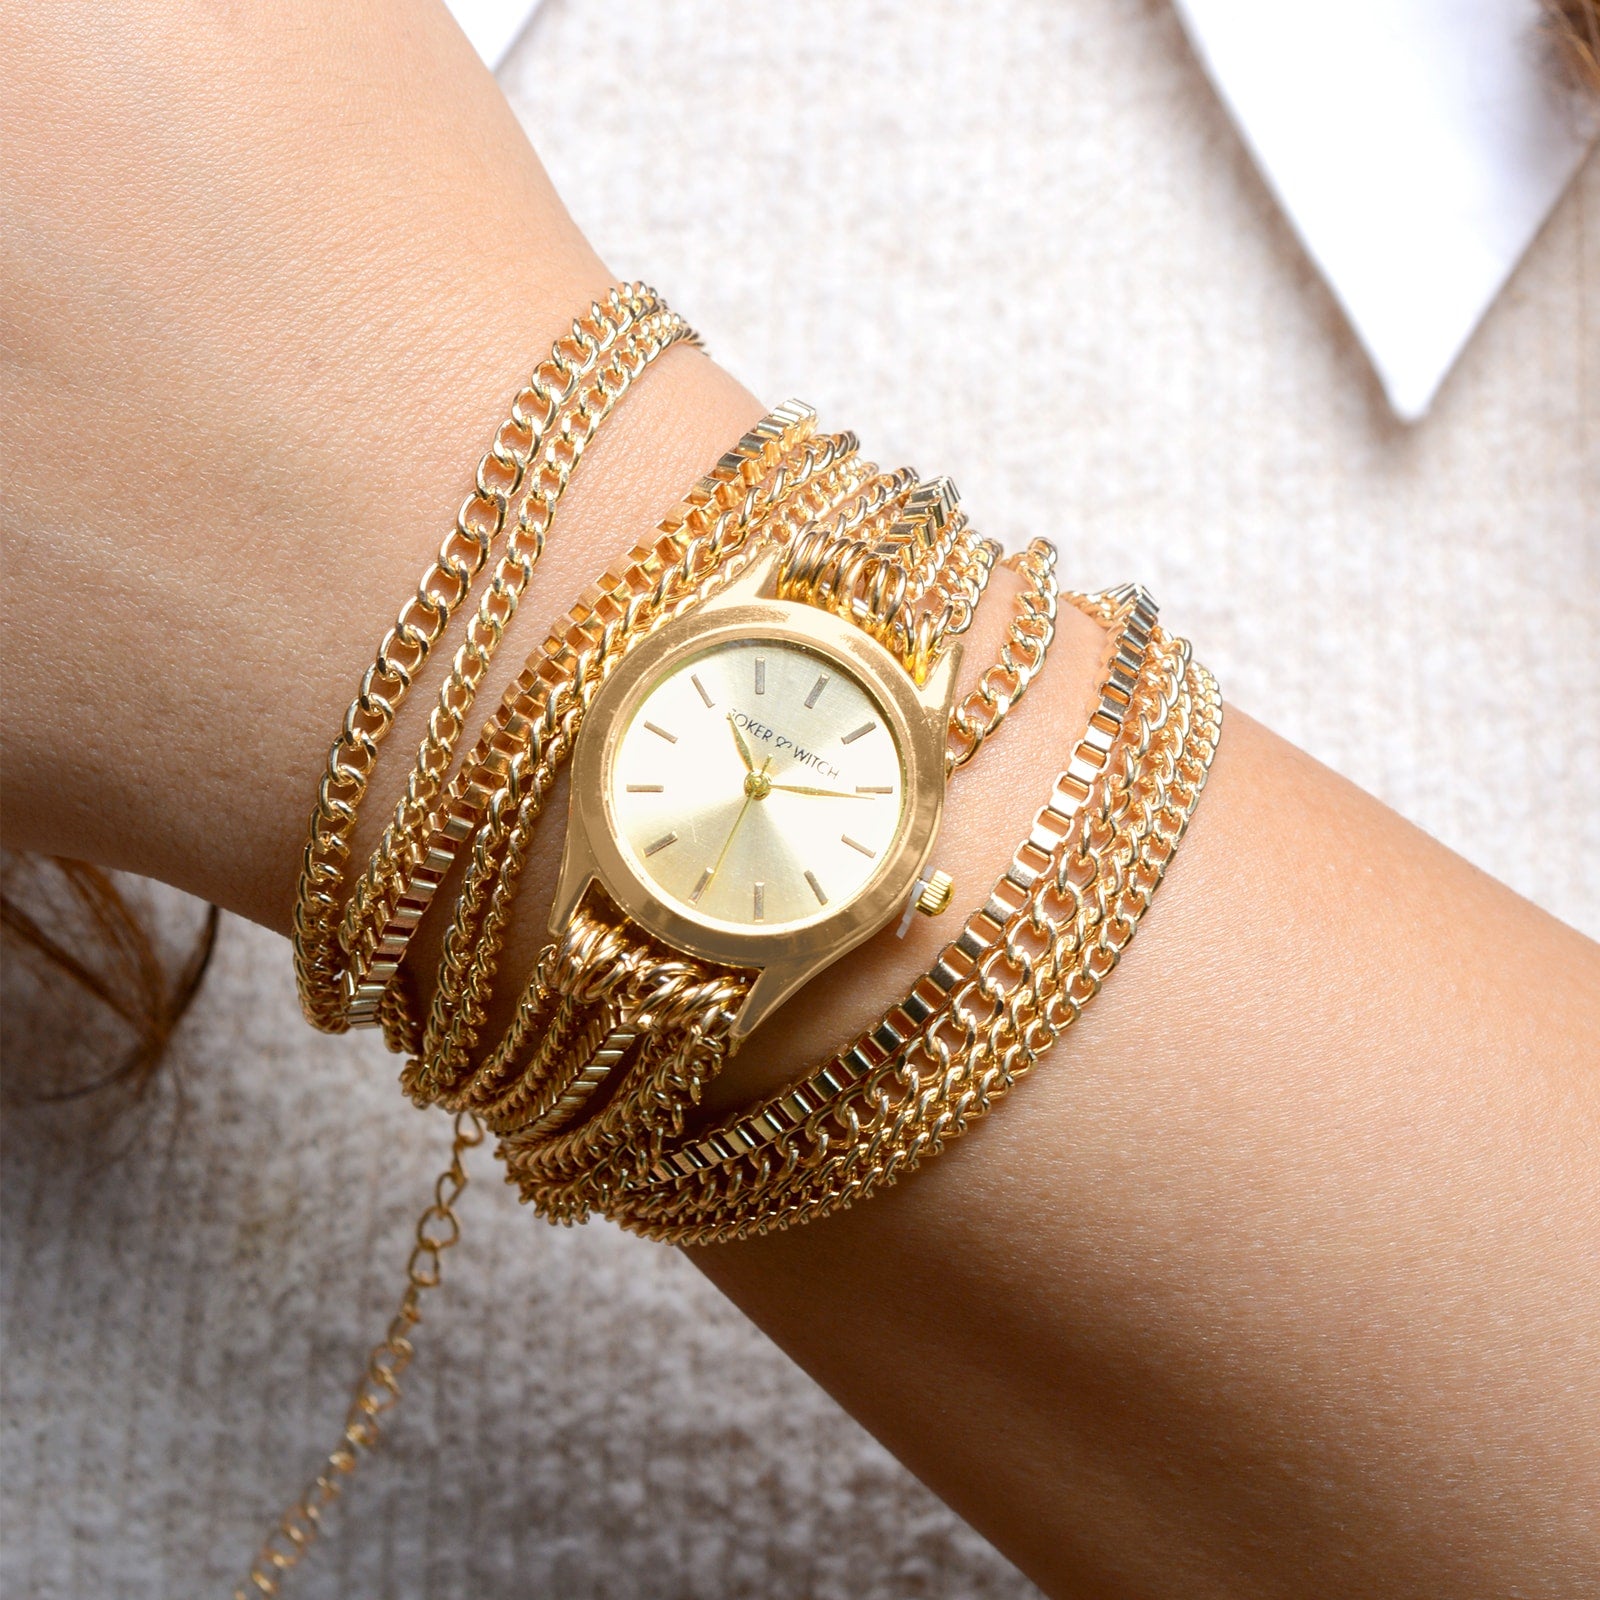 Buy Woman Wrap Watch golden Wrist Watch Winding Watch Bracelet Online in  India  Etsy